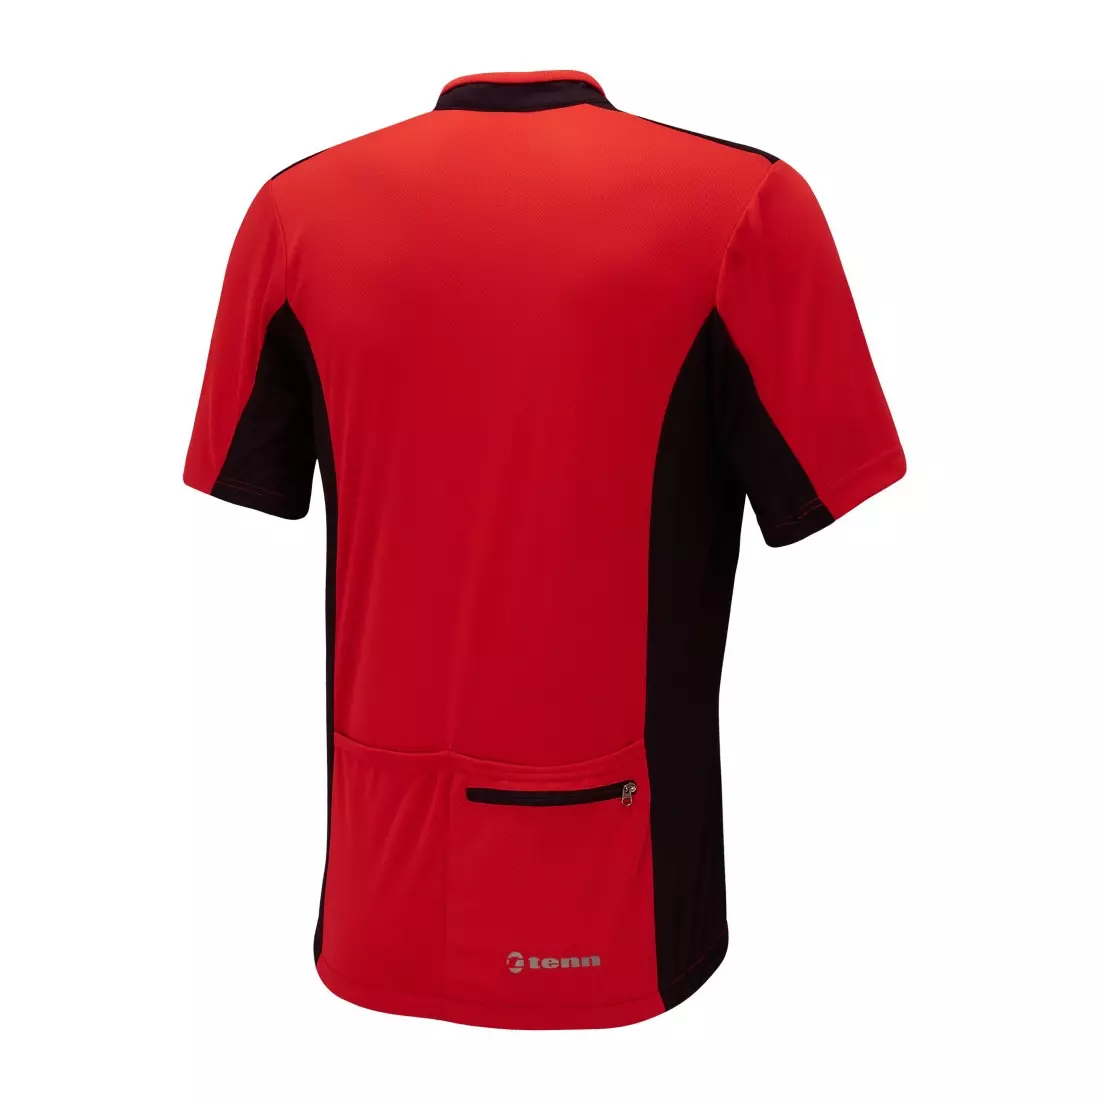 Pánsky cyklistický dres TENN OUTDOORS COOLFLO červeno-čierny